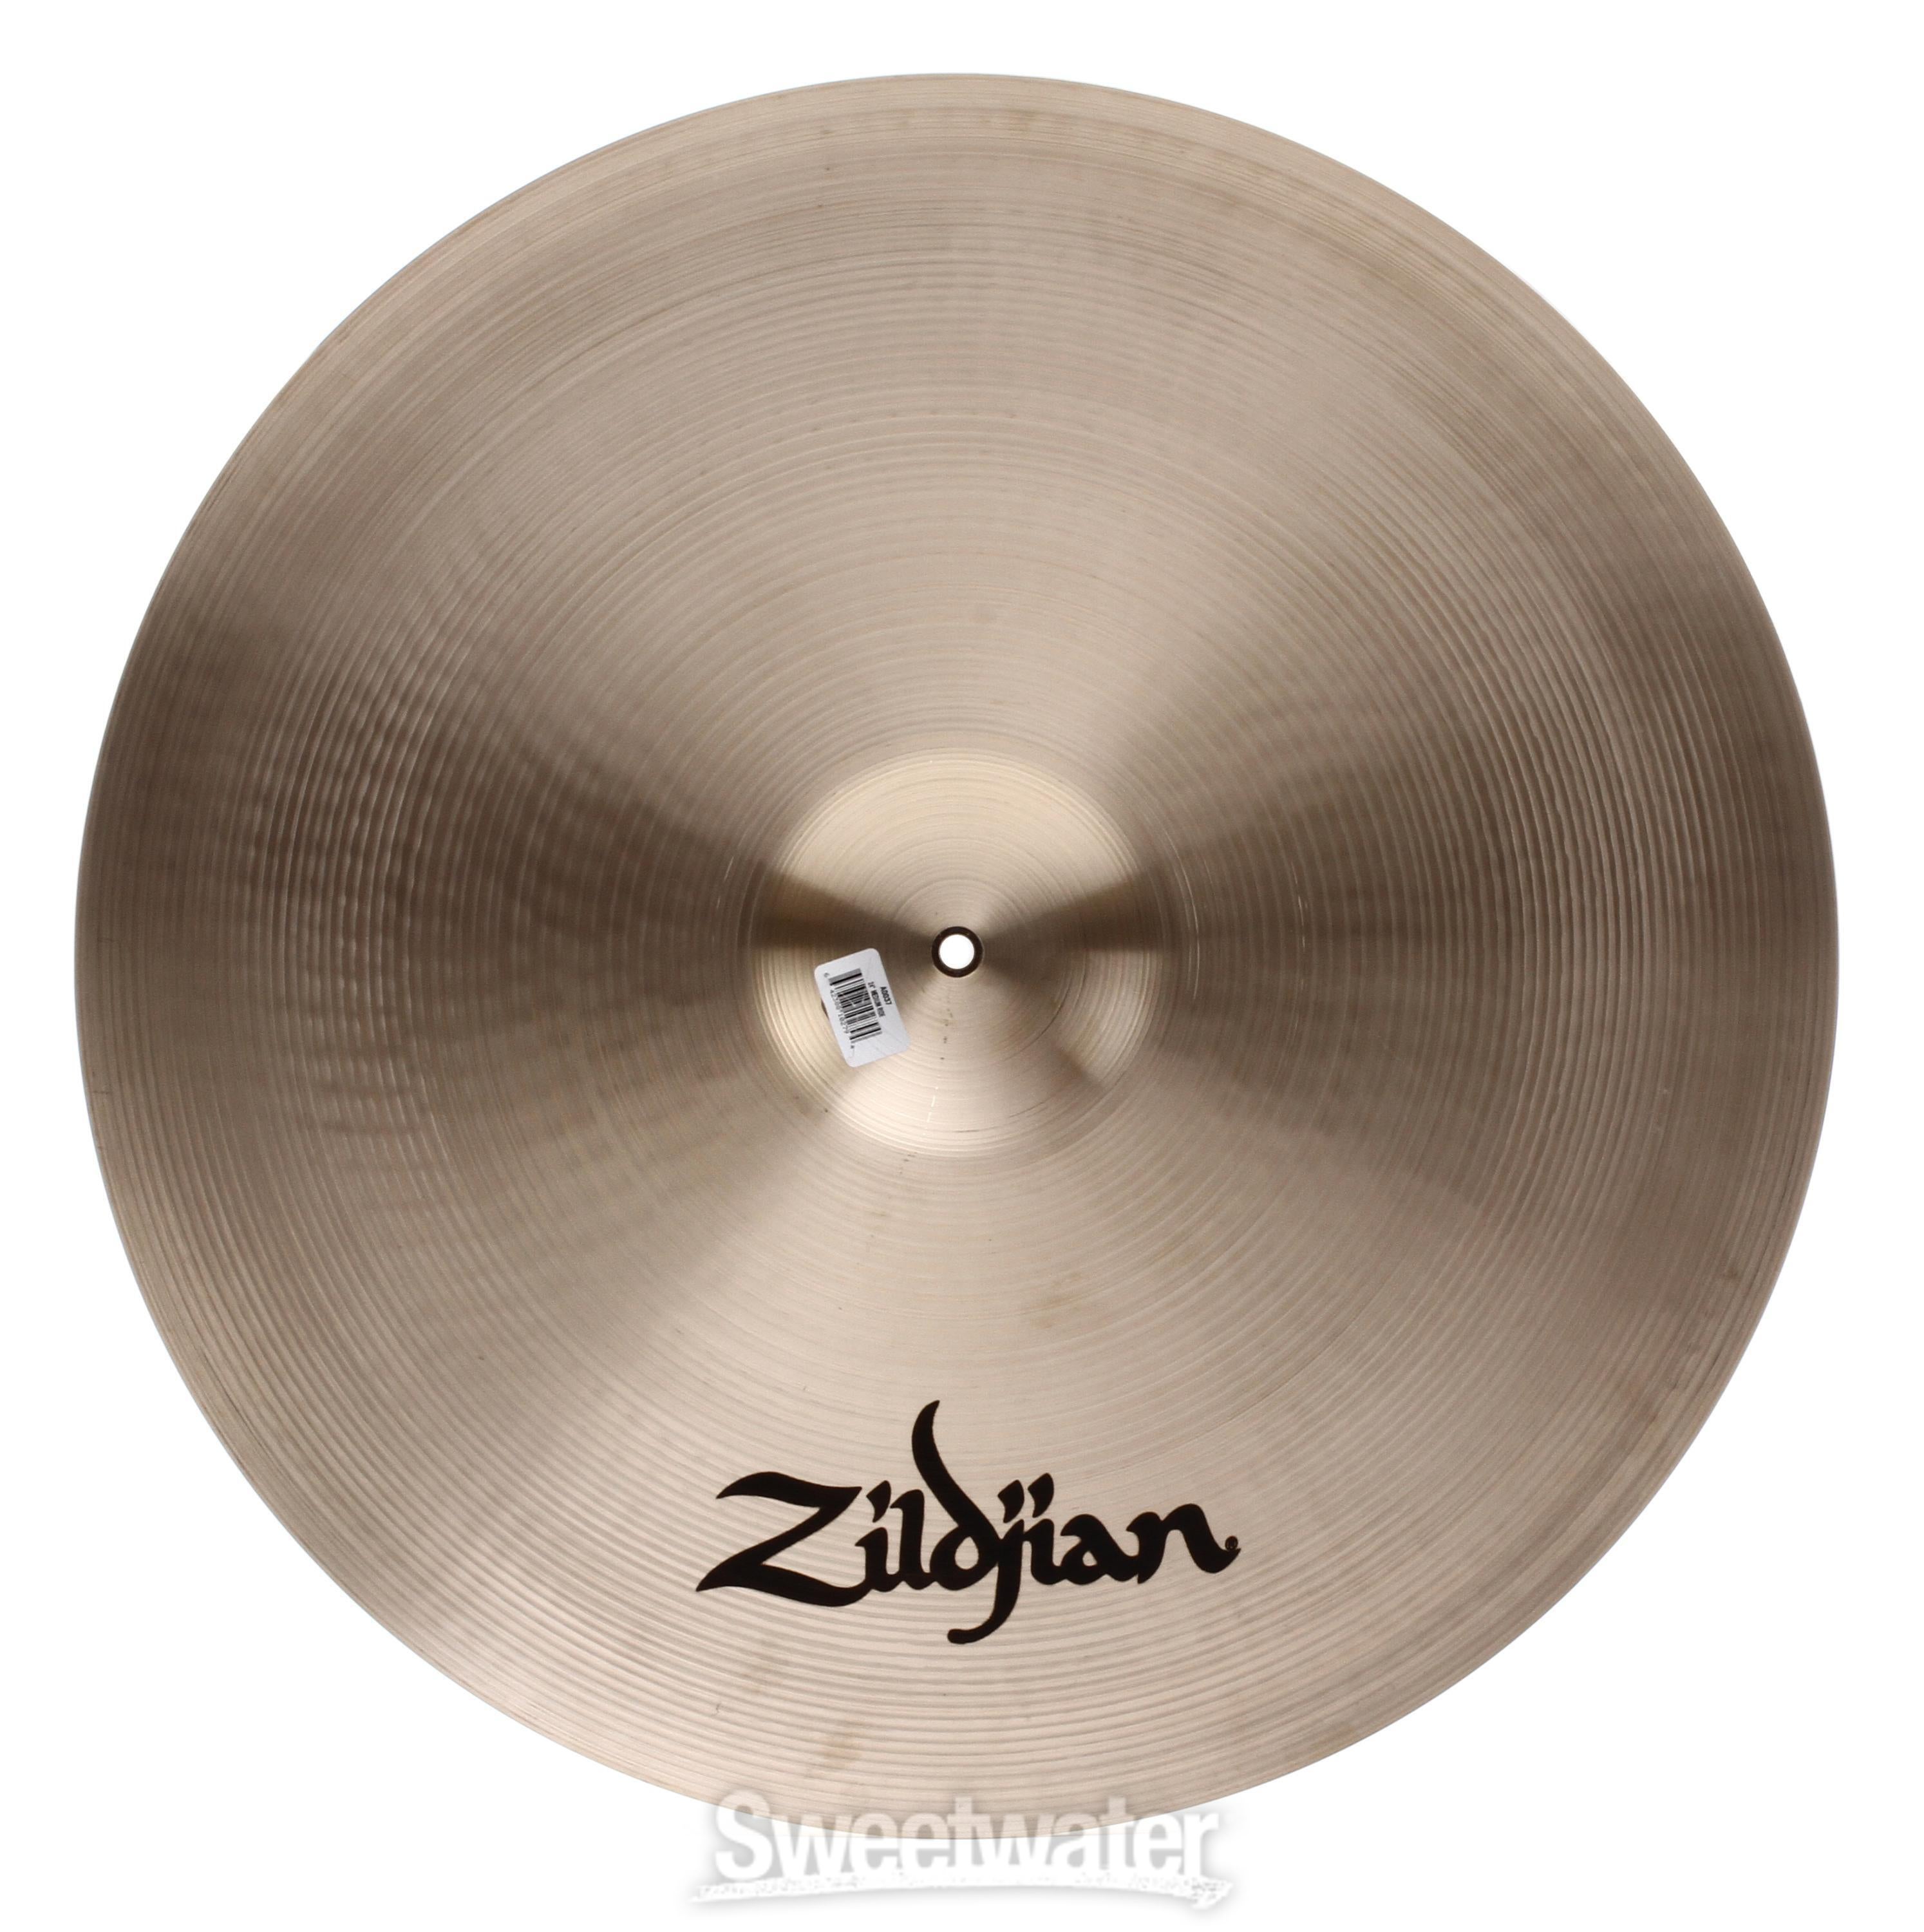 24 inch A Zildjian Medium Ride Cymbal - Sweetwater